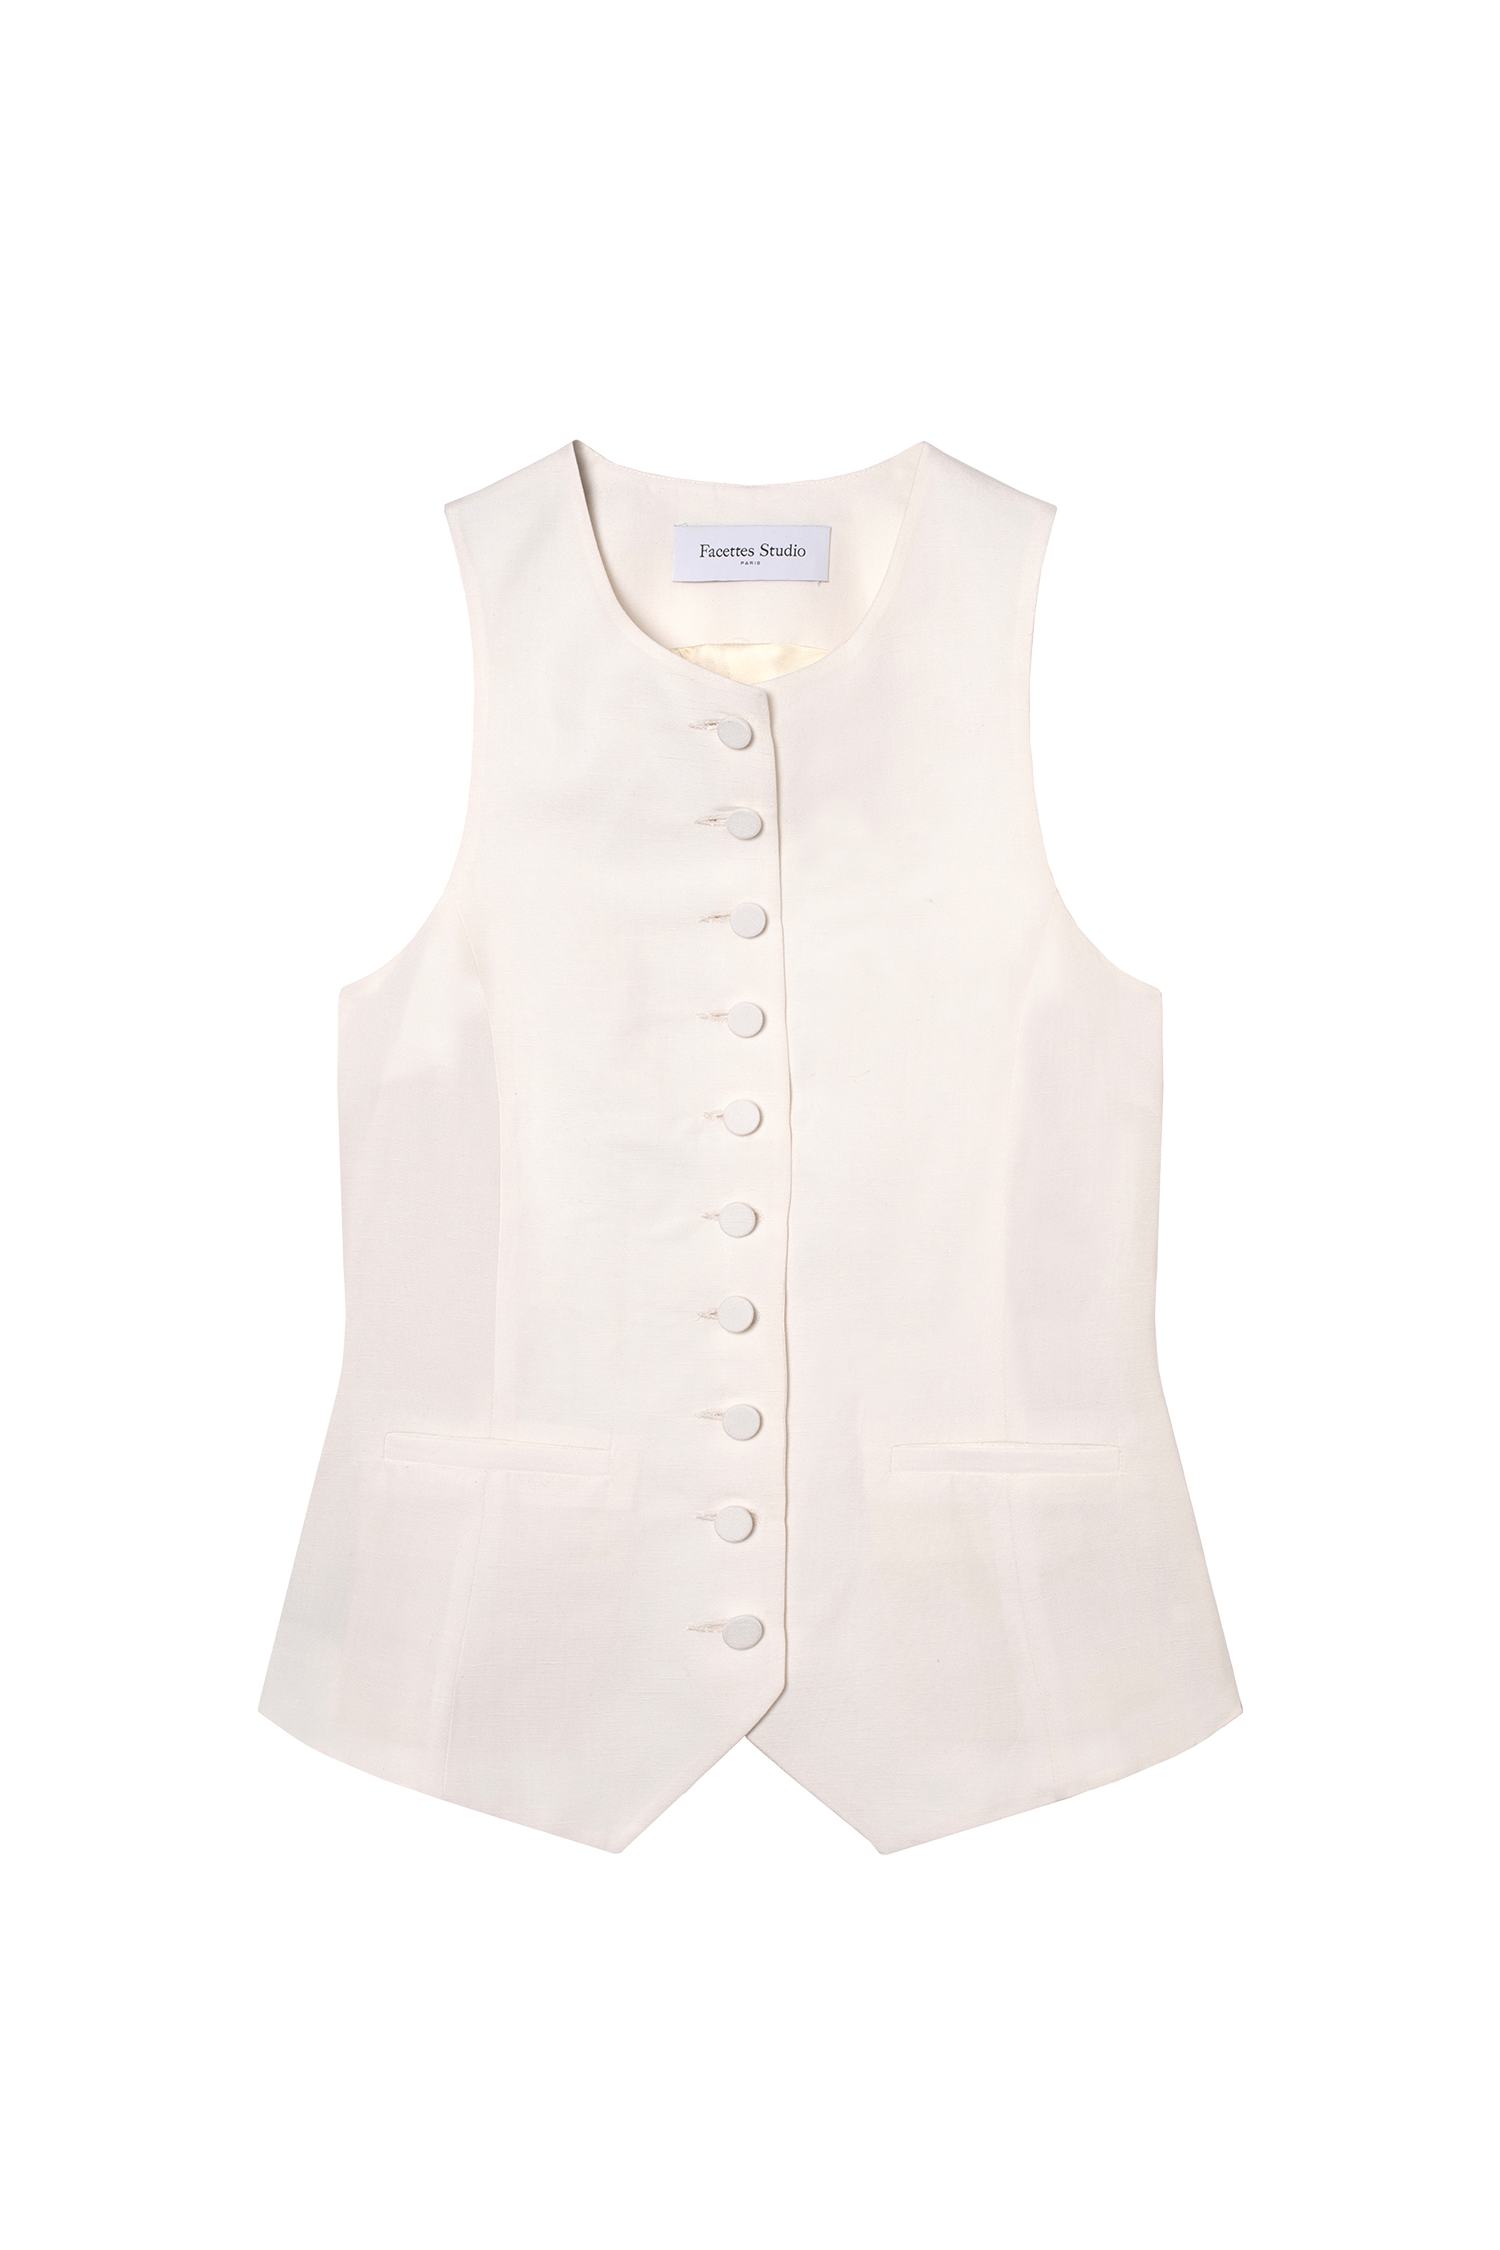 gilet veston de tailleur femme toile de lin et soie blanc cassé Made in France par Facettes Studio